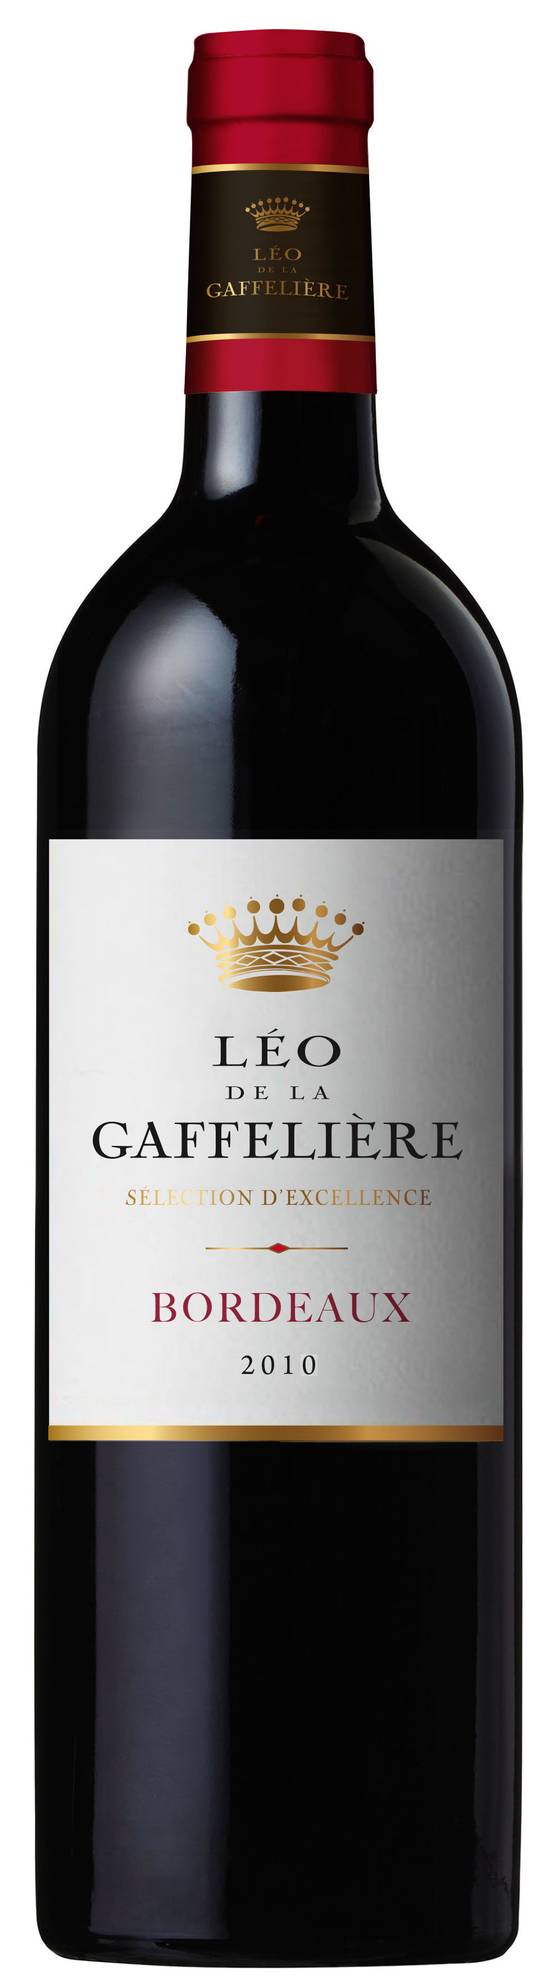 Malet Roquefort - Leo de la gaffeliere AOC Bordeaux vin rouge 2016 (750 ml)